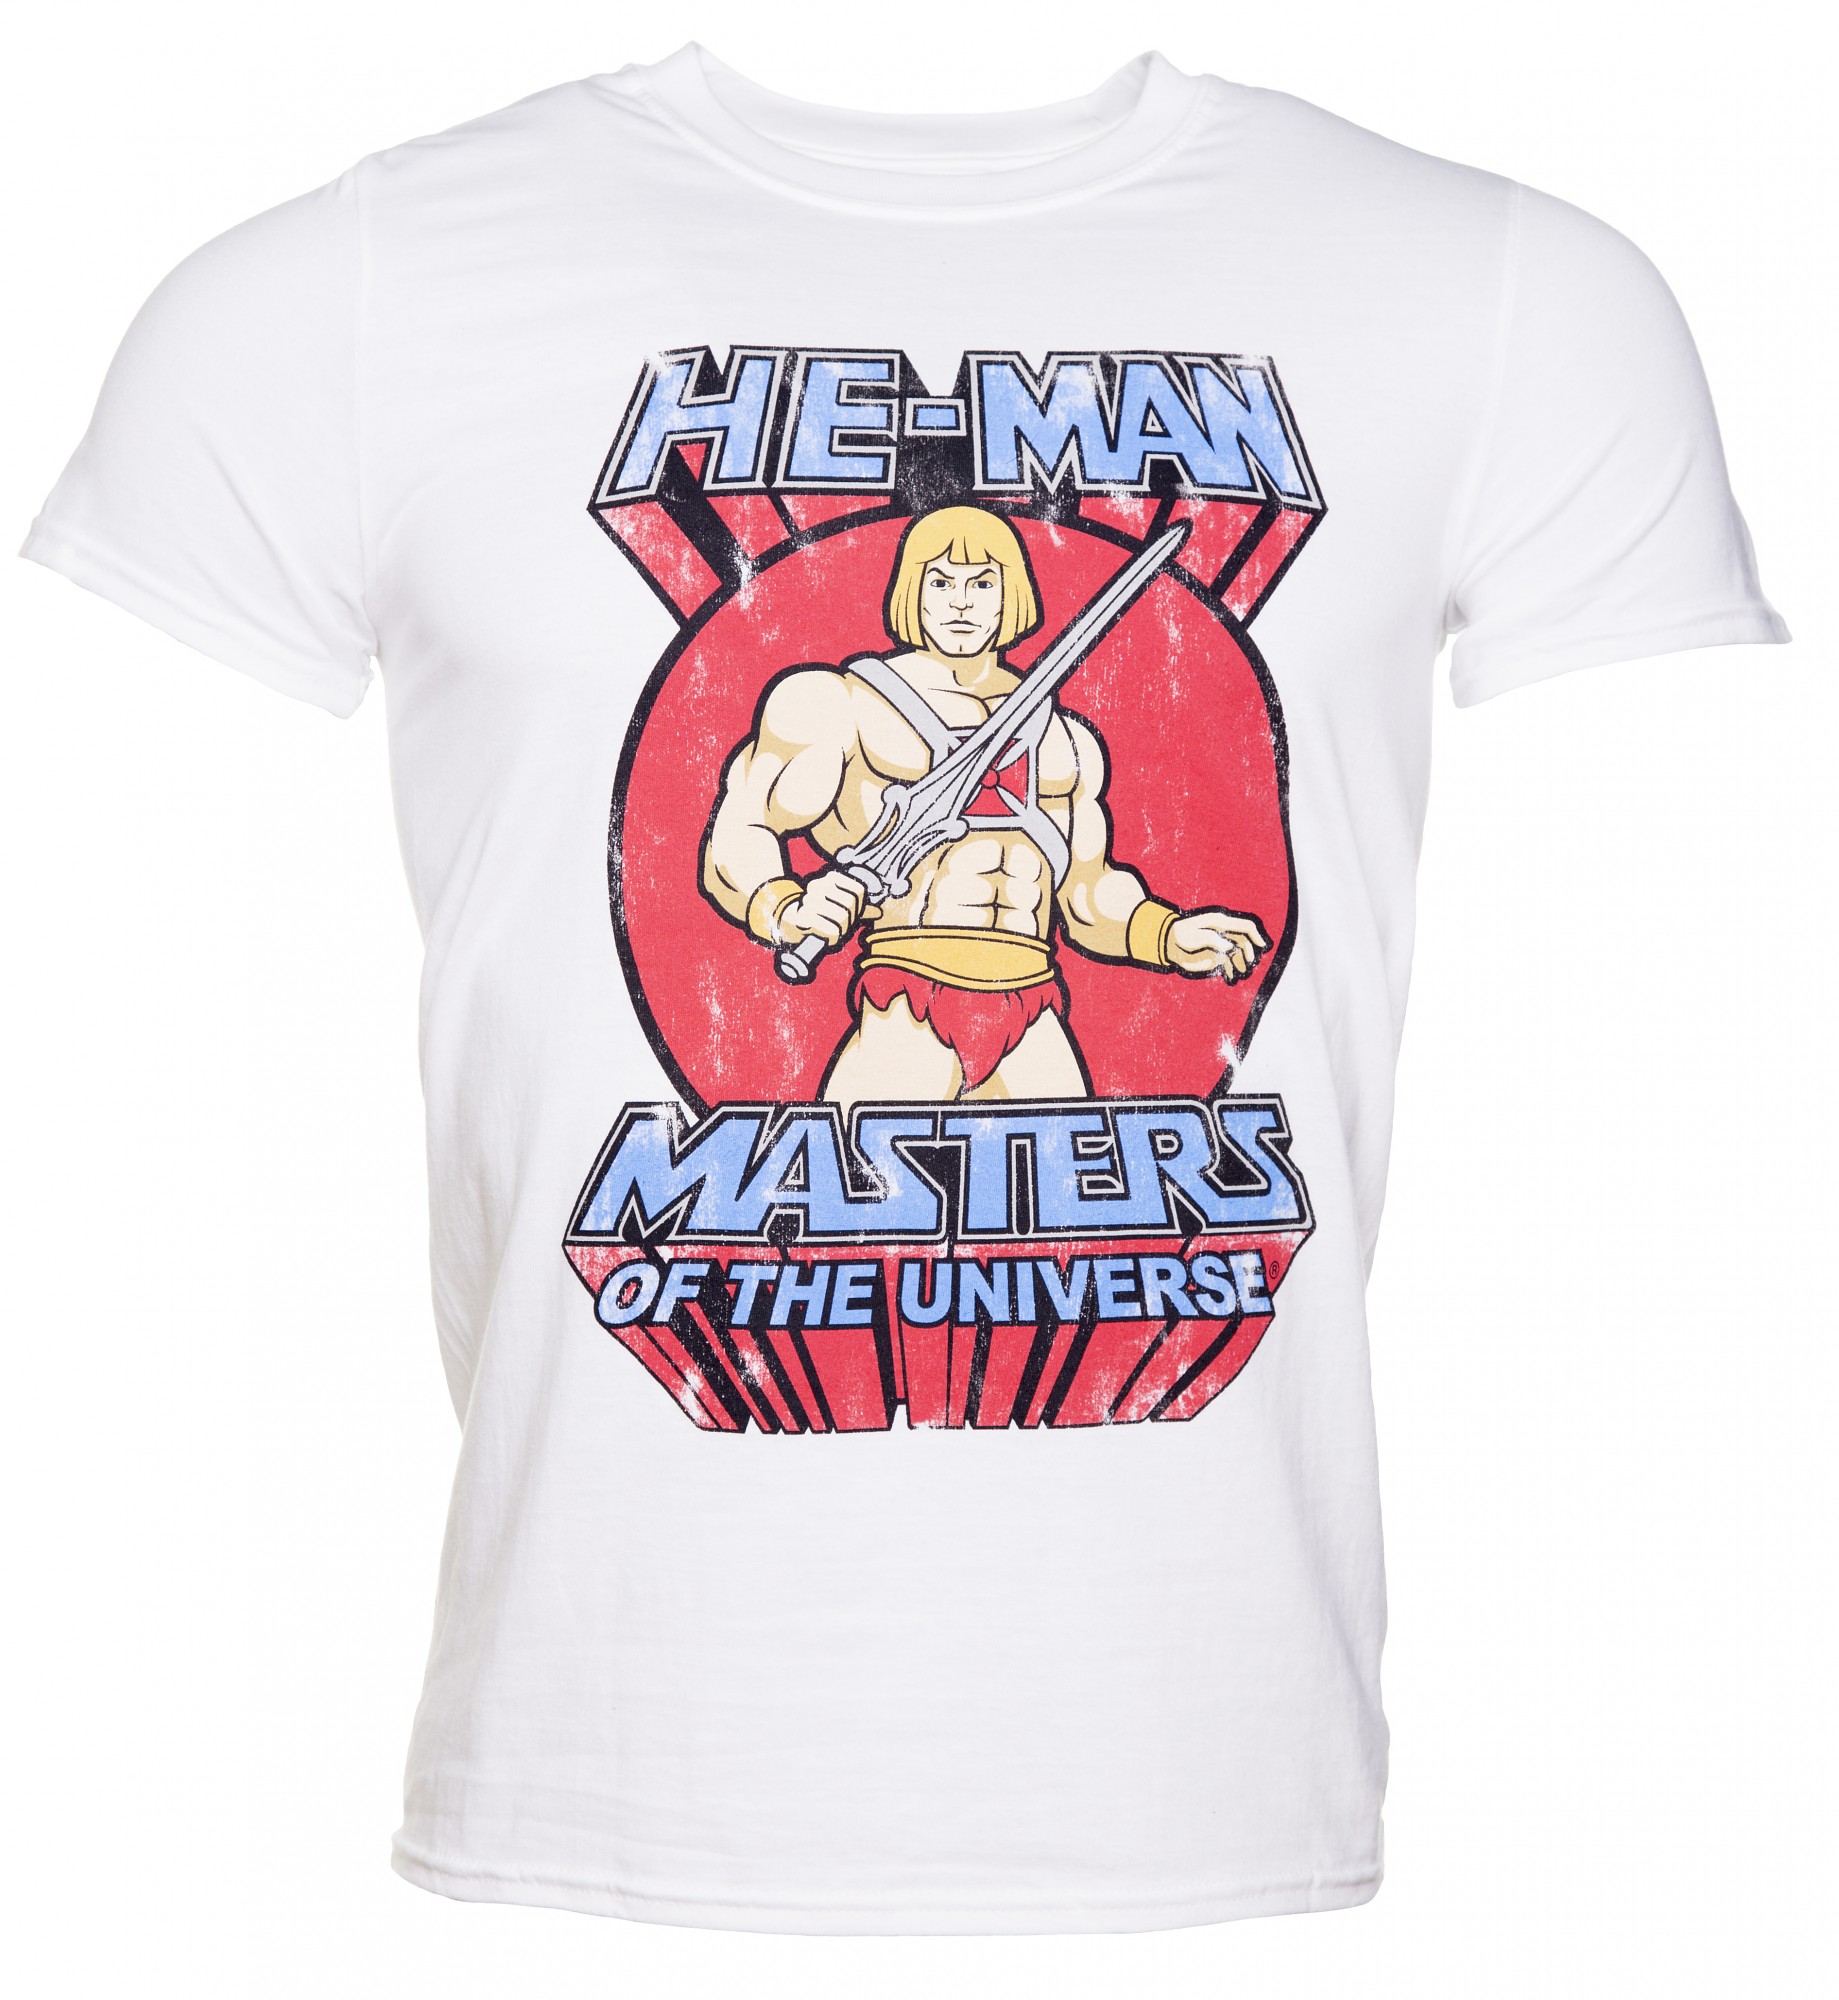 Men's White Classic He-Man T-Shirt